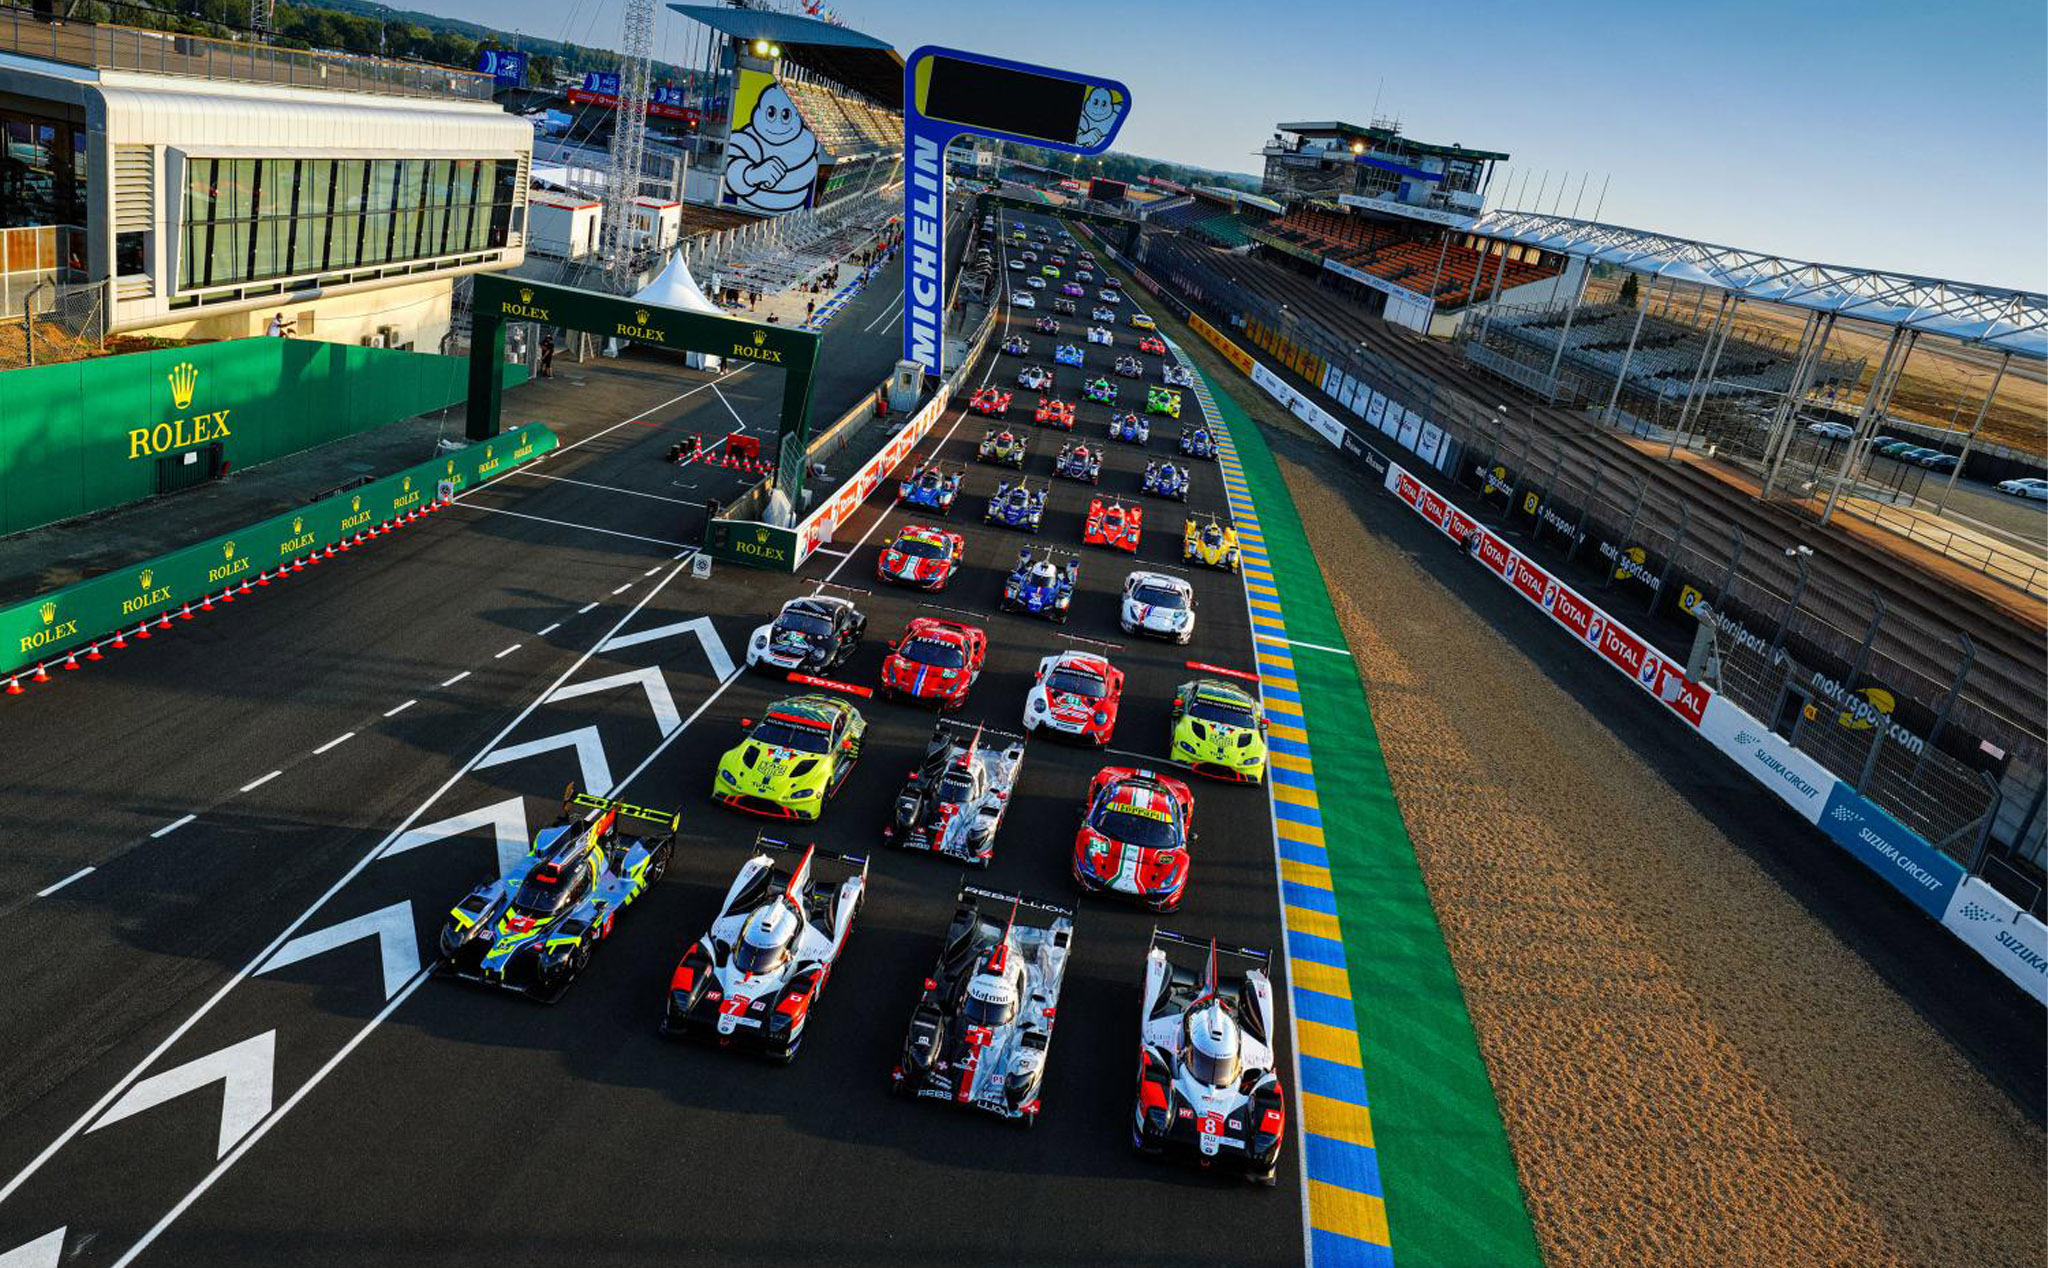 24h ở Le Mans - 24 giờ đồng hồ nỗ lực tạo ra tiến bộ cho ngành xe hơi toàn cầu